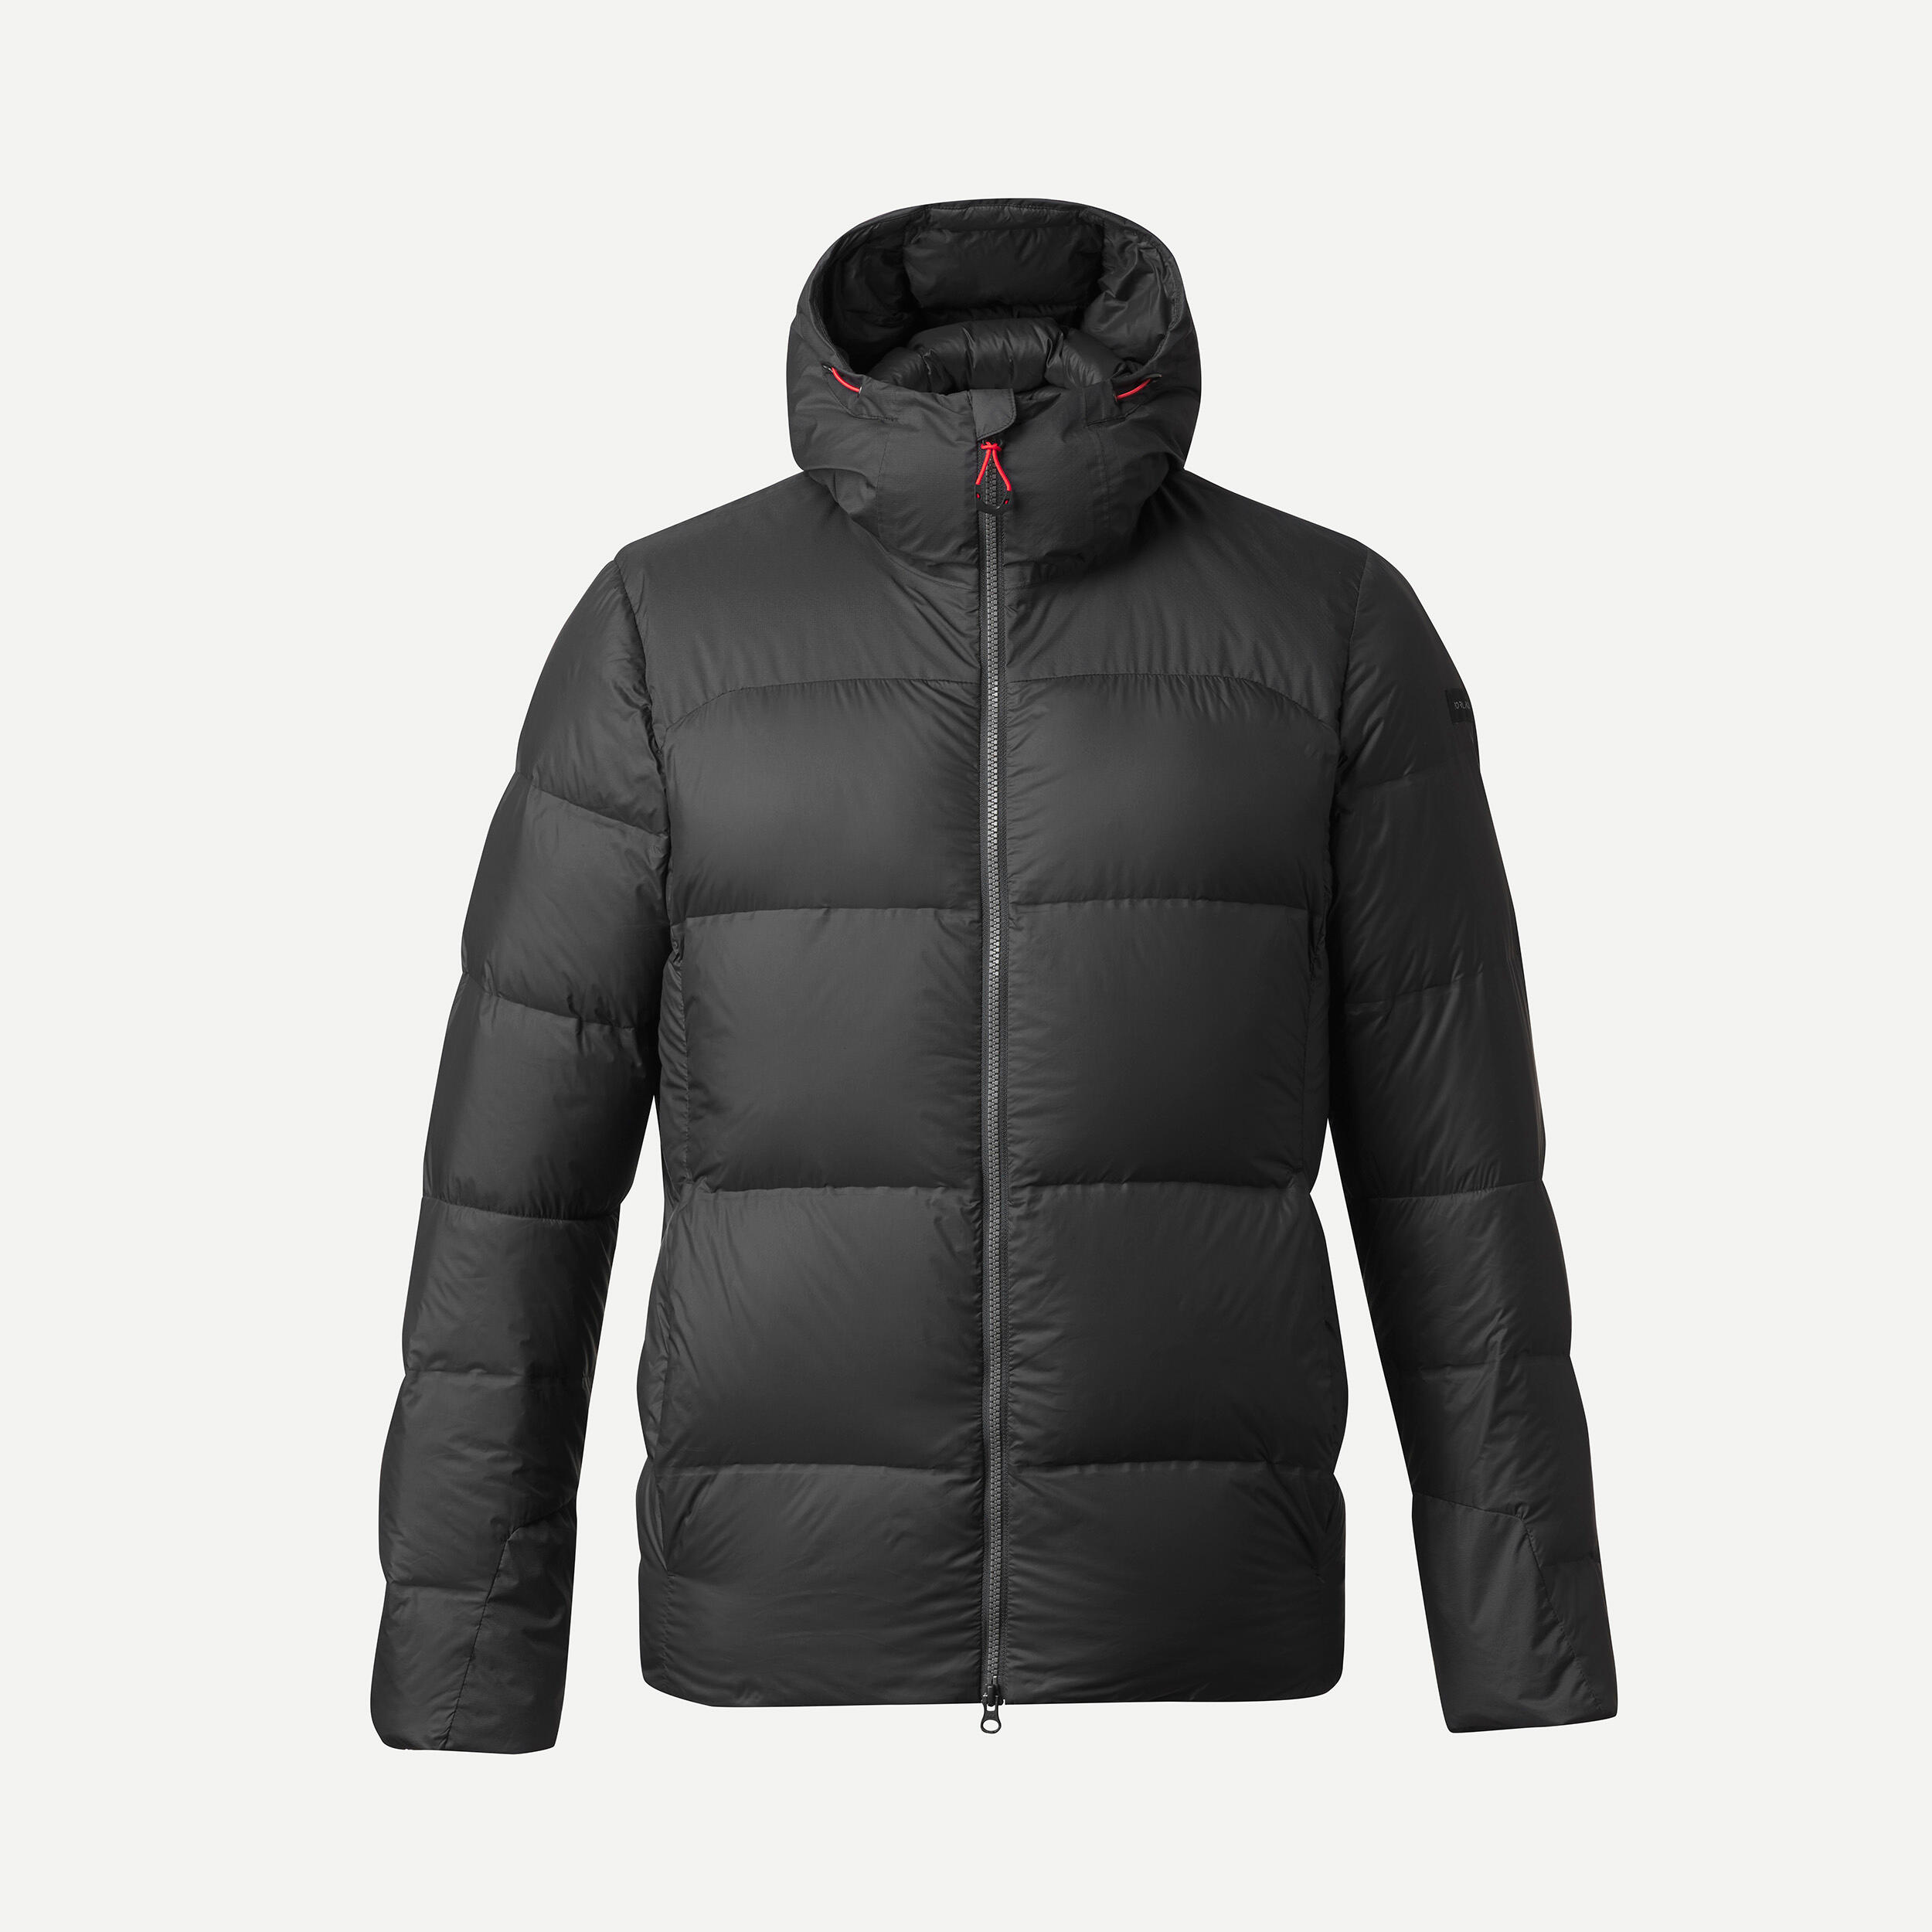 Manteau d'hiver en duvet homme – MT 900 noir - FORCLAZ